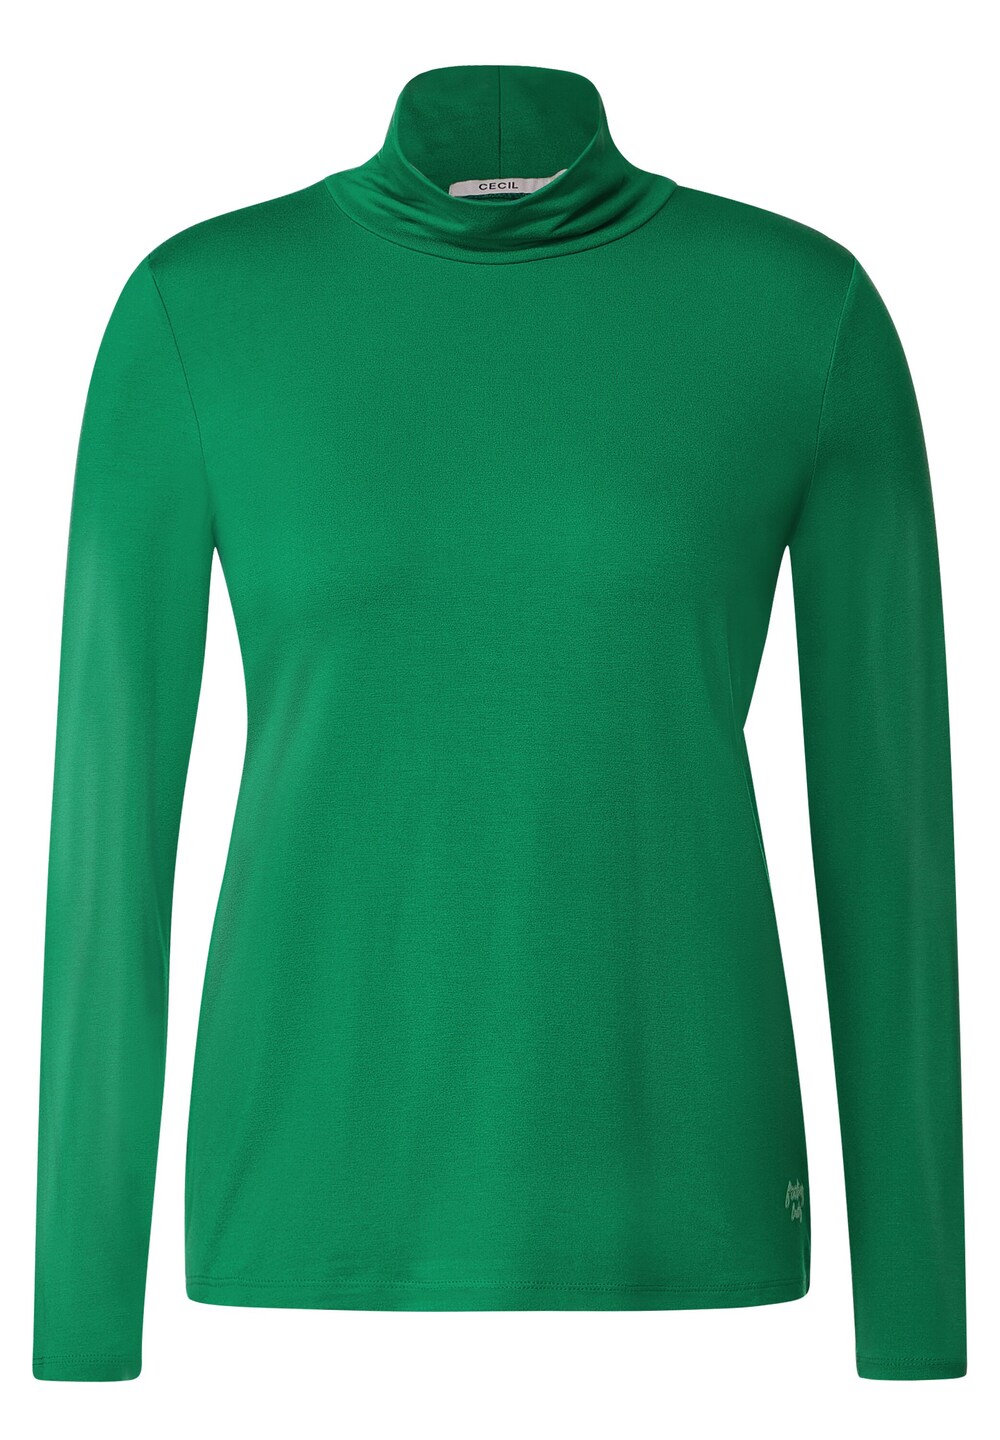 Рубашка CECIL, трава зеленая рубашка yoek трава зеленая